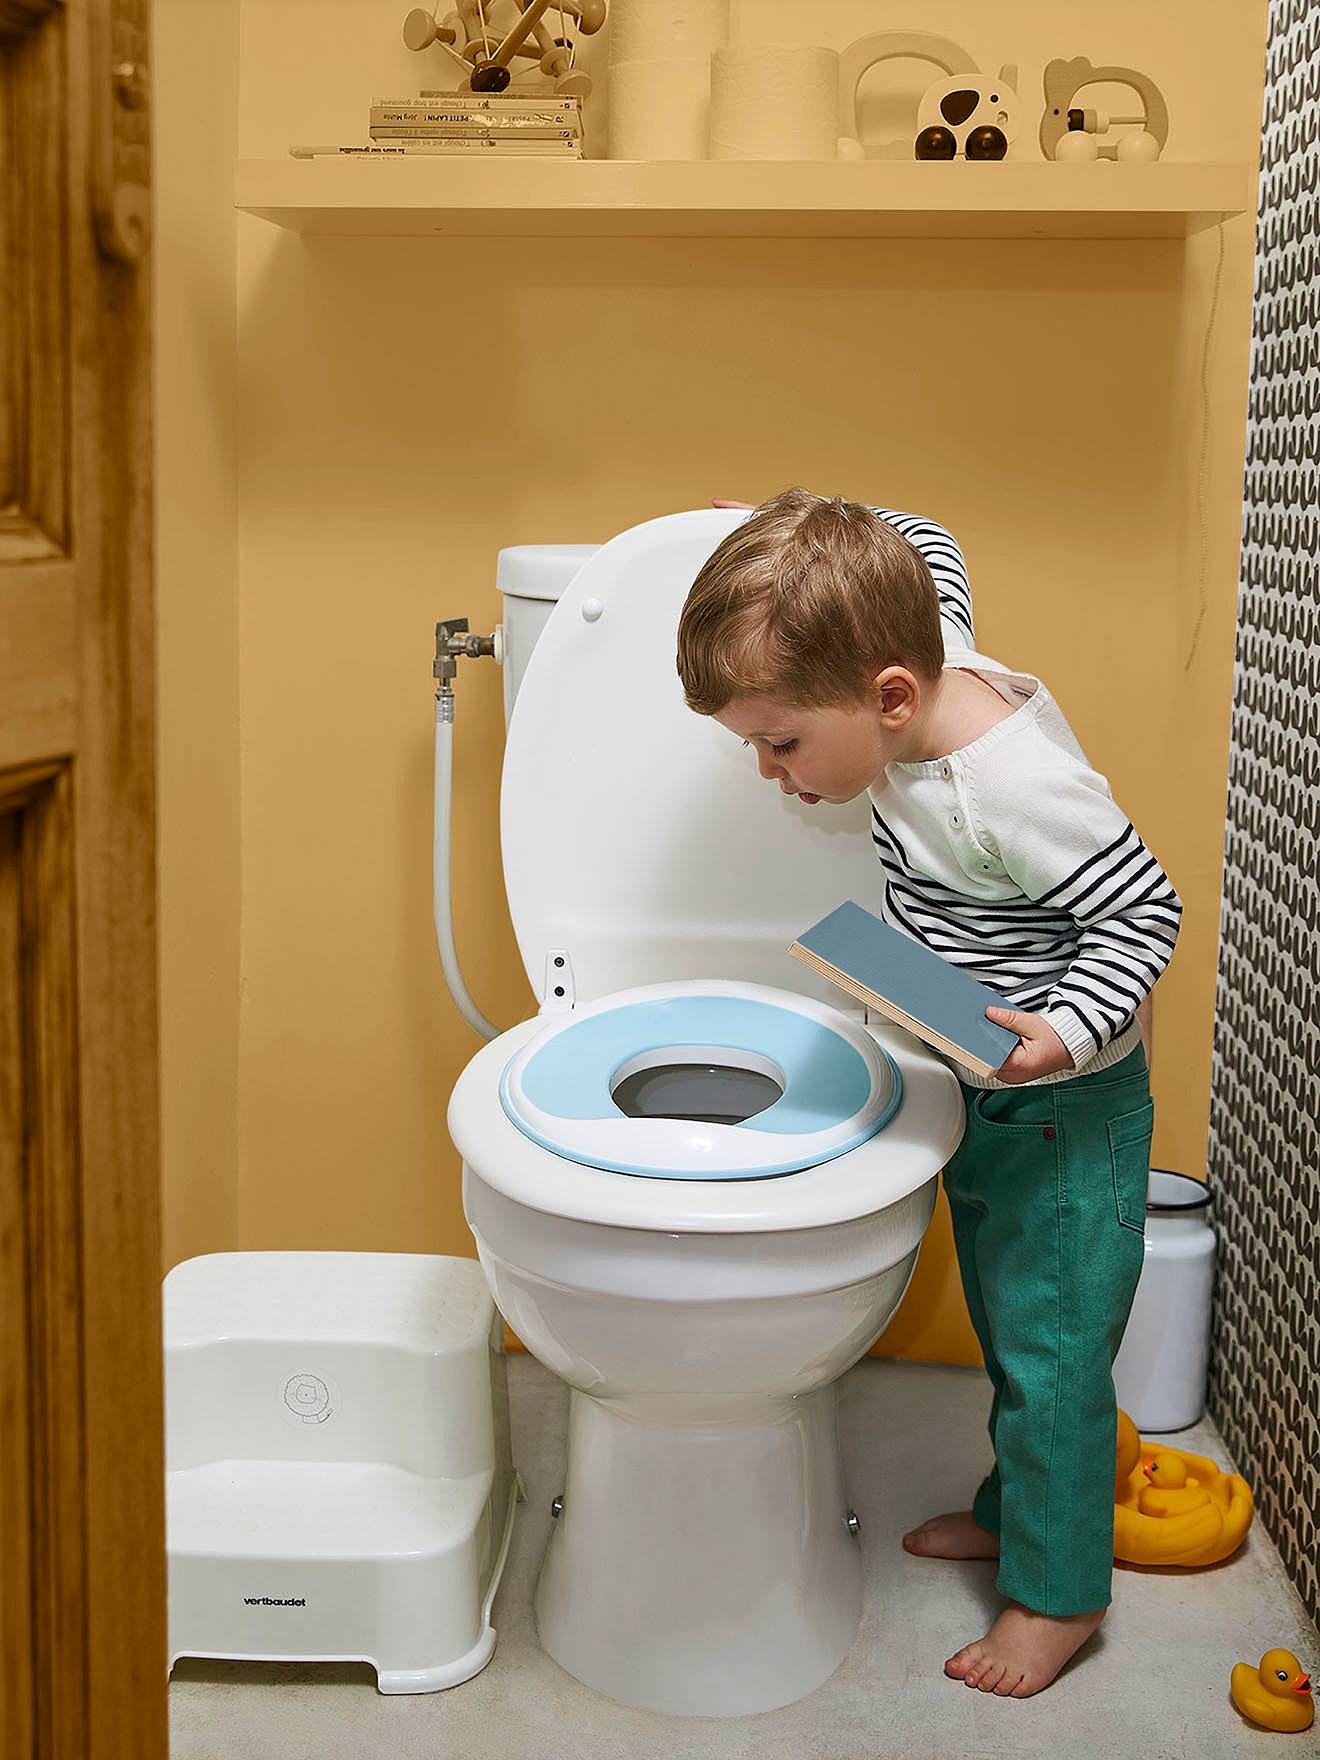 Le réducteur de toilettes : quels avantages ?, Autour de bébé